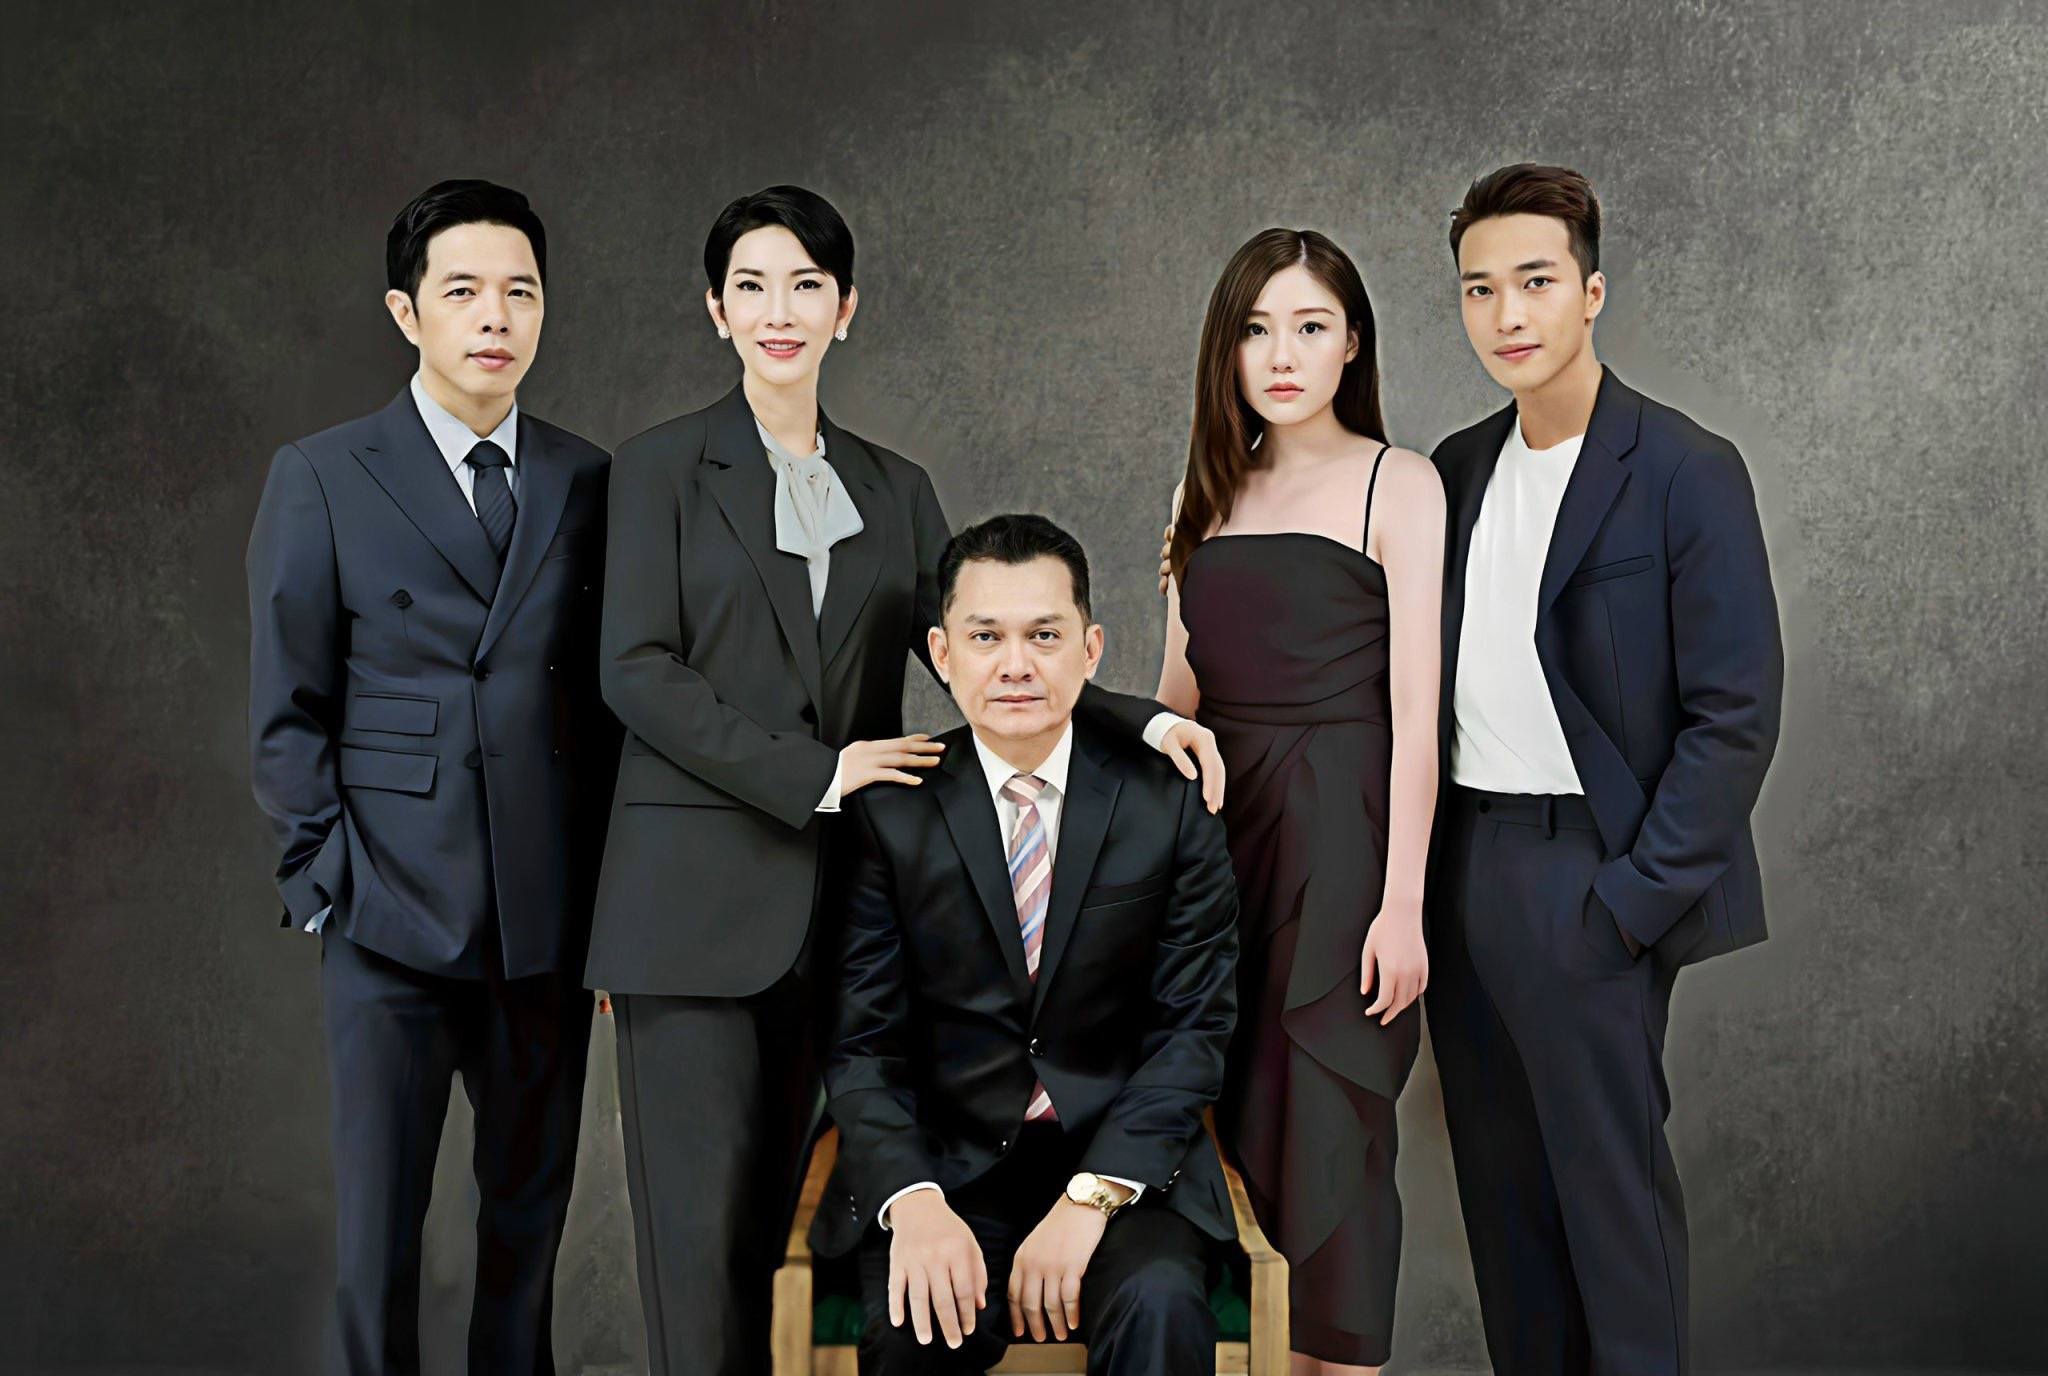 NSƯT Hữu Châu đóng cùng Xuân Lan, Thái Hòa và các diễn viên trẻ trong "Cái giá của hạnh phúc" (Ảnh: Đoàn phim cung cấp).